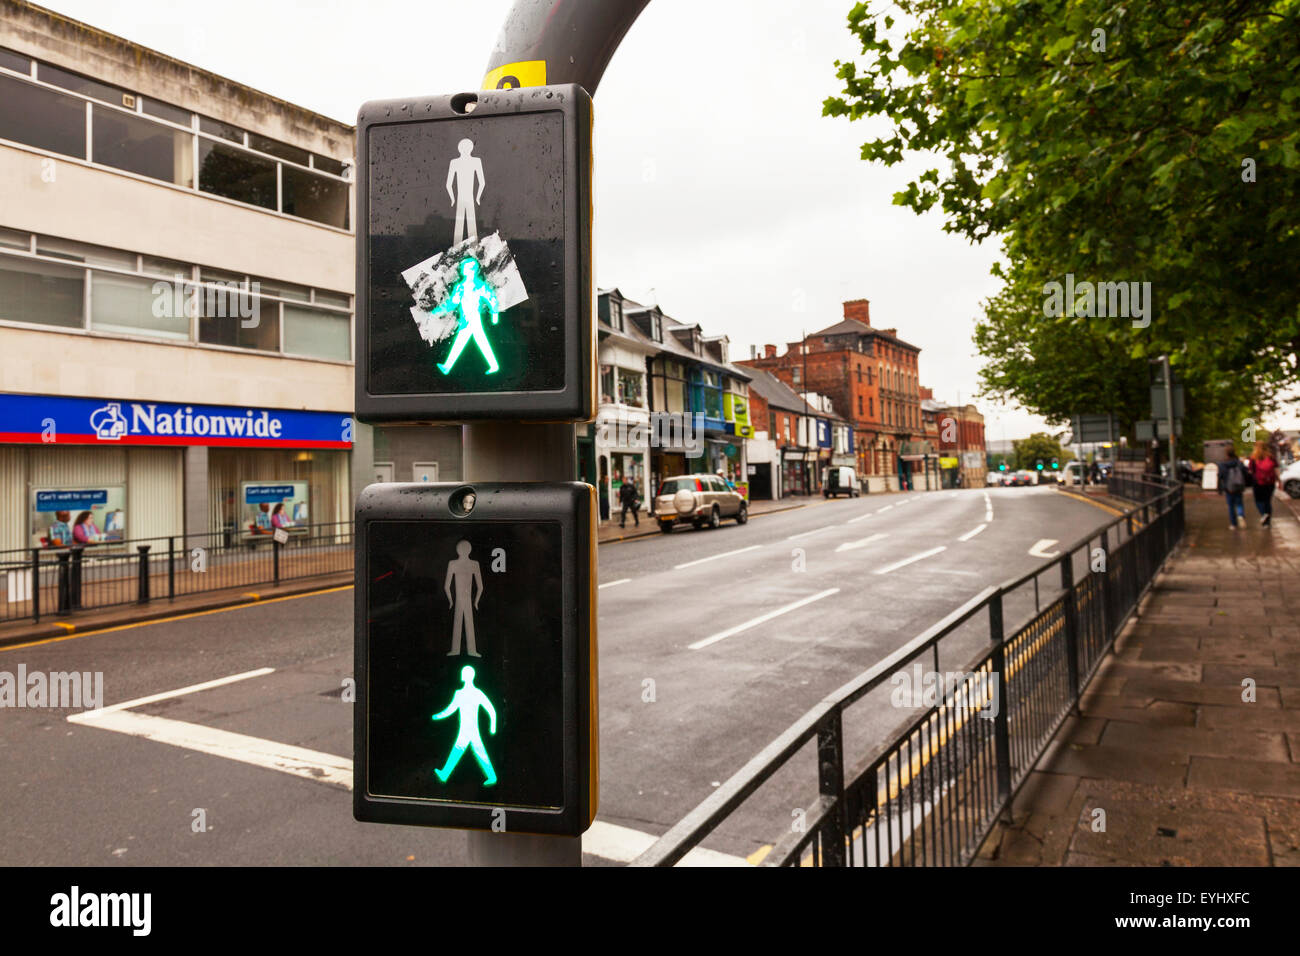 Passage pour piétons voyant vert allumé l'homme signifie traverser en toute sécurité la sécurité aux passages à niveau de la ville de Lincoln Lincolnshire UK Angleterre Banque D'Images